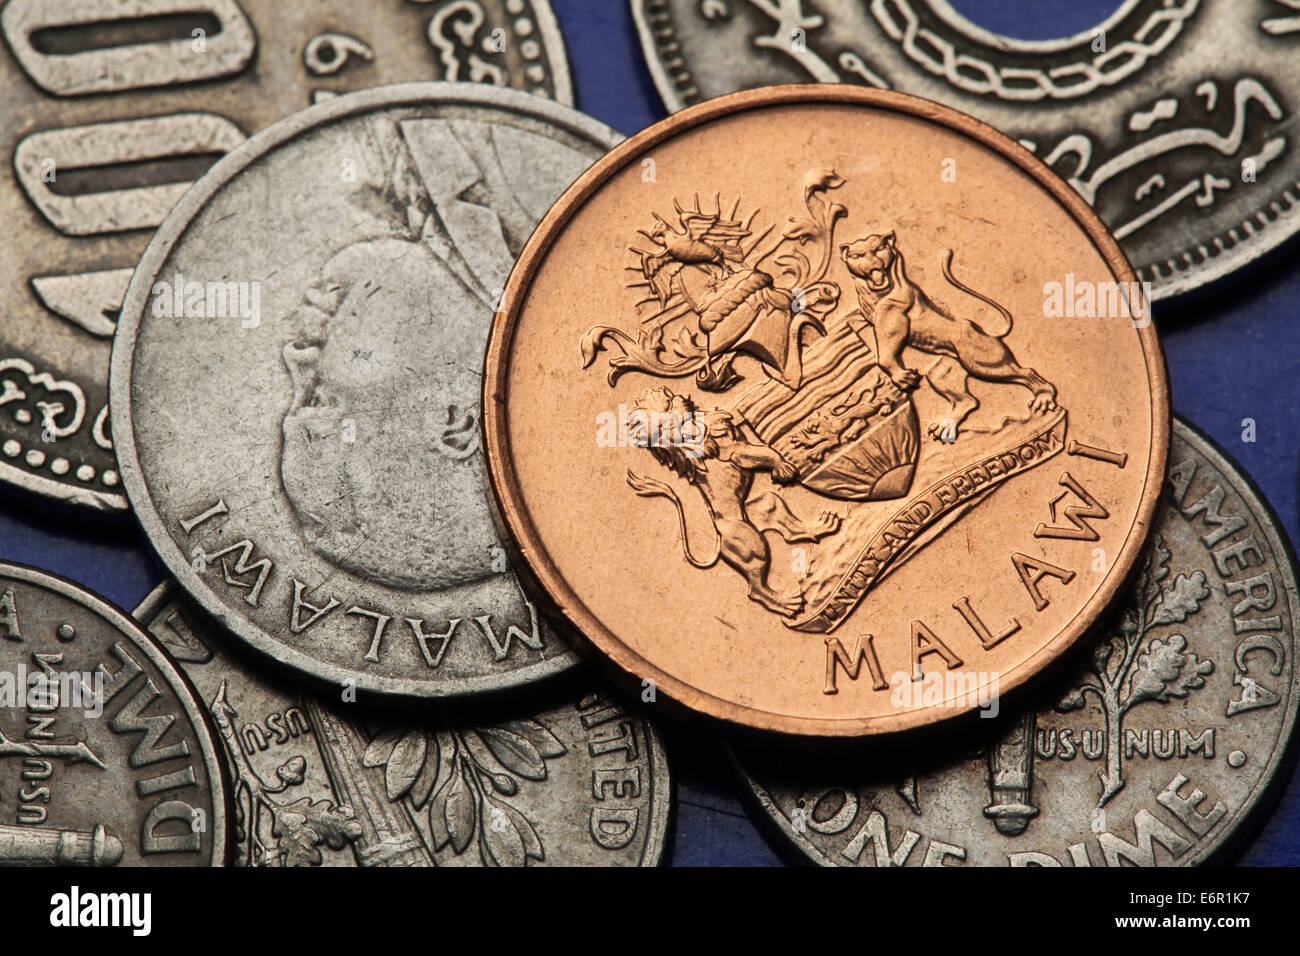 Monete del Malawi. Malawiani stemma e malawiana eroe nazionale John Chilembwe raffigurato in tambala malawiana monete. Foto Stock